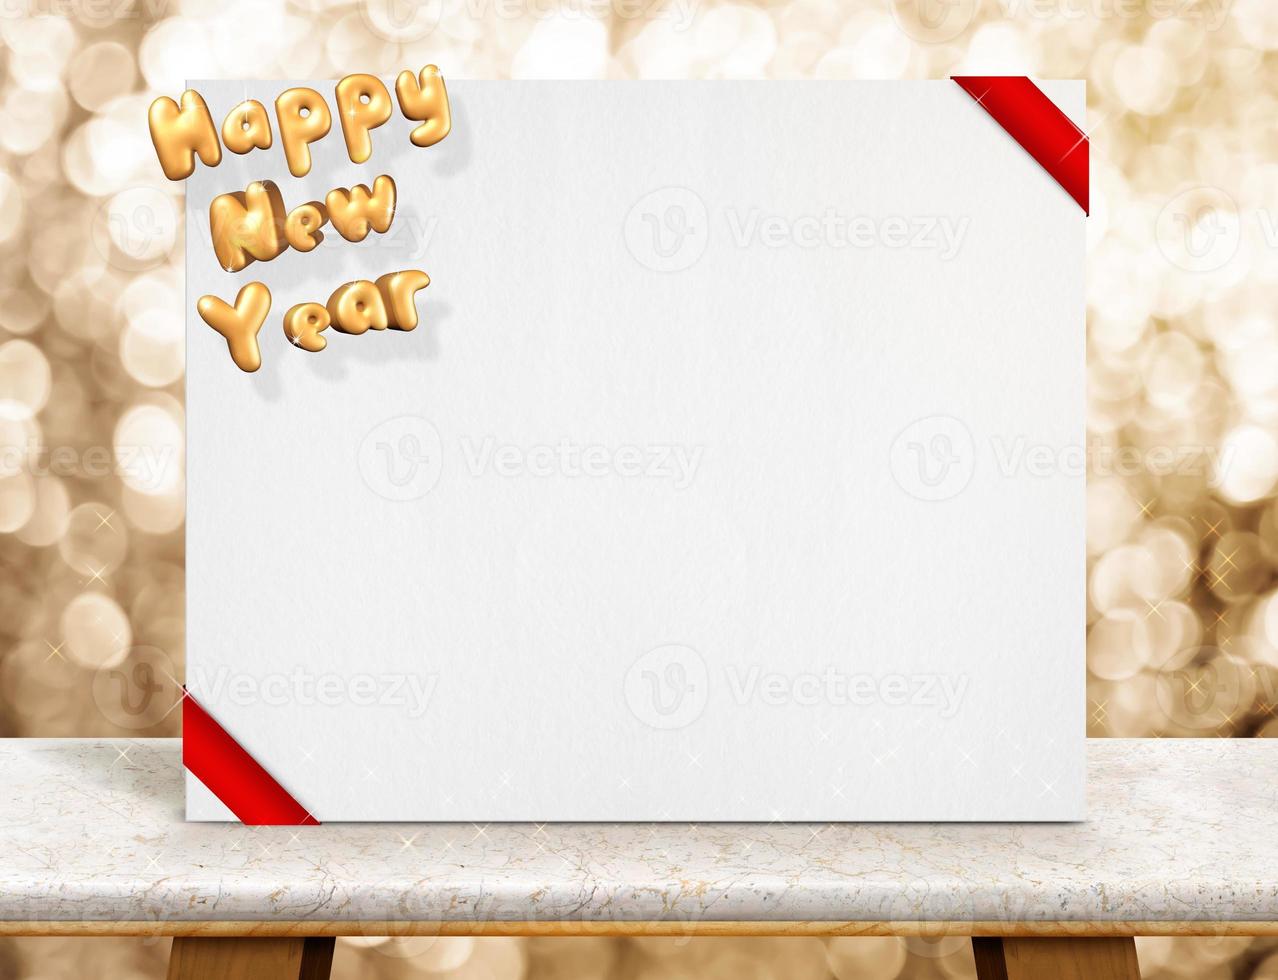 felice anno nuovo rendering 3d oro e carta bianca con nastro rosso nella stanza prospettica con parete bokeh scintillante sul tavolo di marmo foto